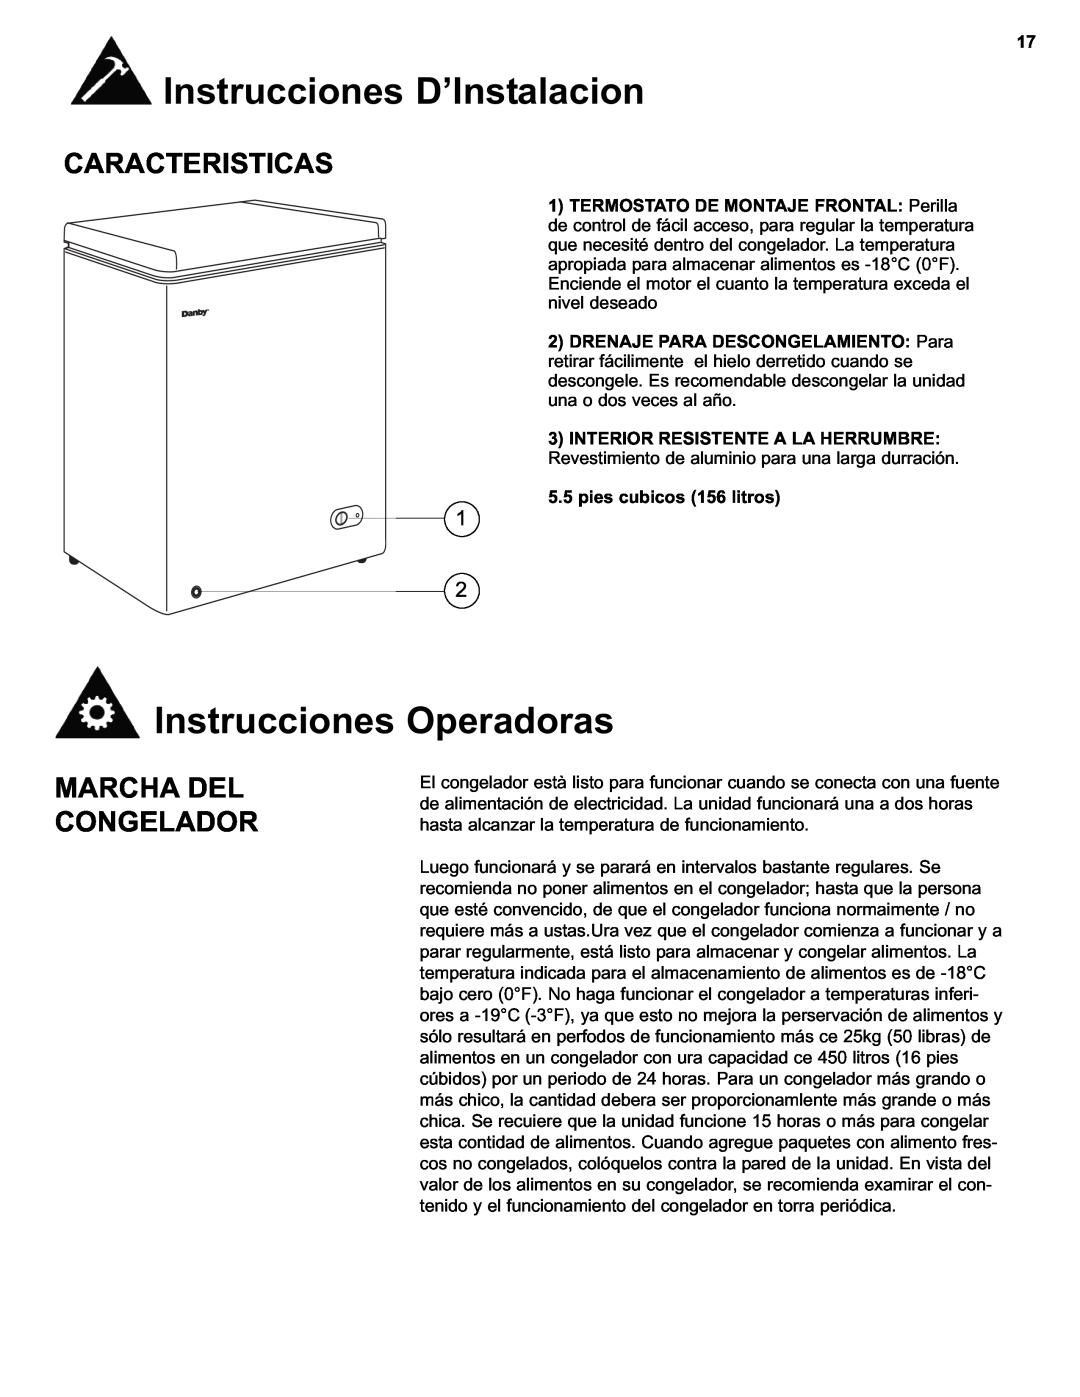 Danby DCF550W1 manual Instrucciones Operadoras, Caracteristicas, Marcha Del Congelador, pies cubicos 156 litros 